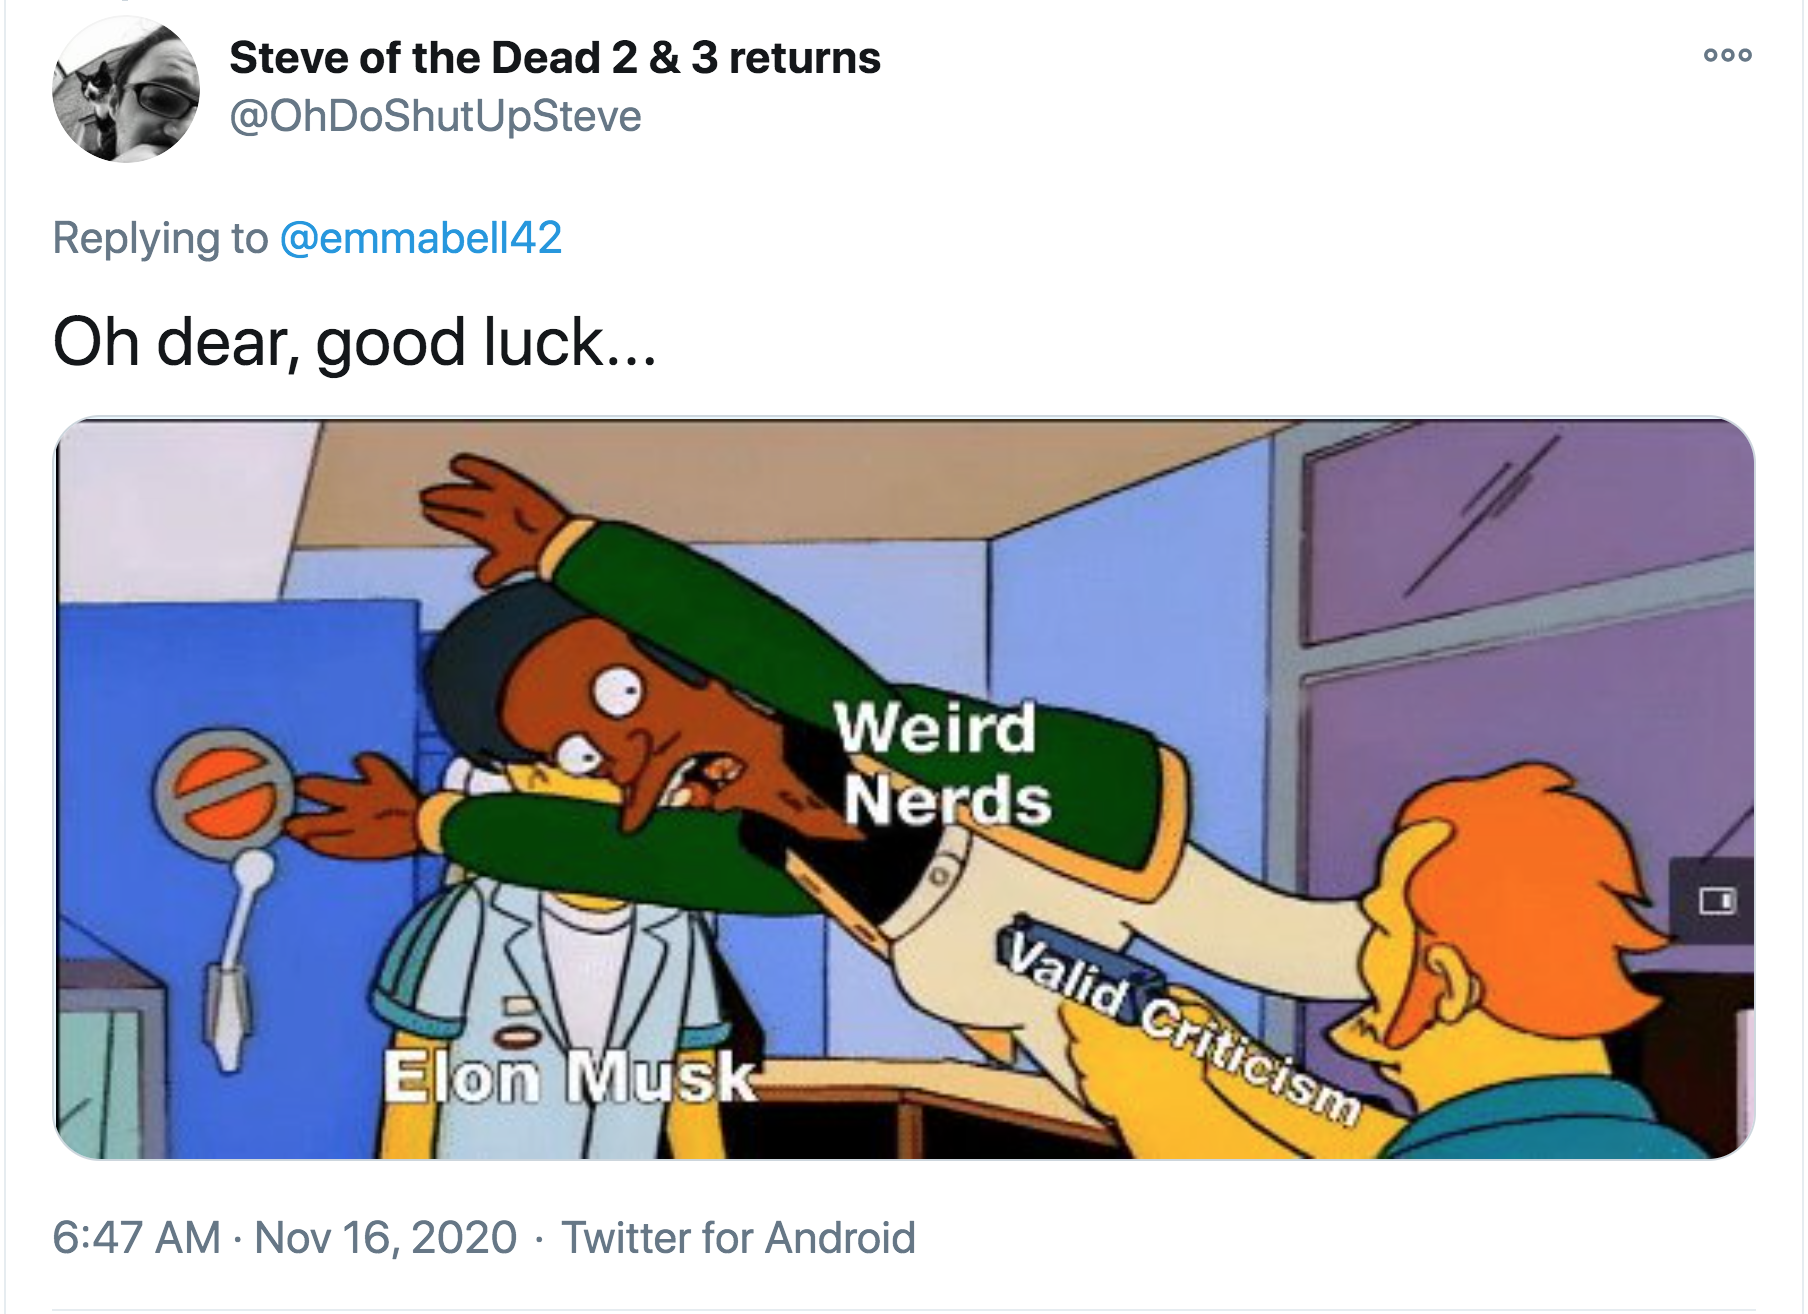 elon musk weird nerds meme - 000 Steve of the Dead 2 & 3 returns Oh dear, good luck... Weird Nerds M Valid Criticism Elon Musk . Twitter for Android